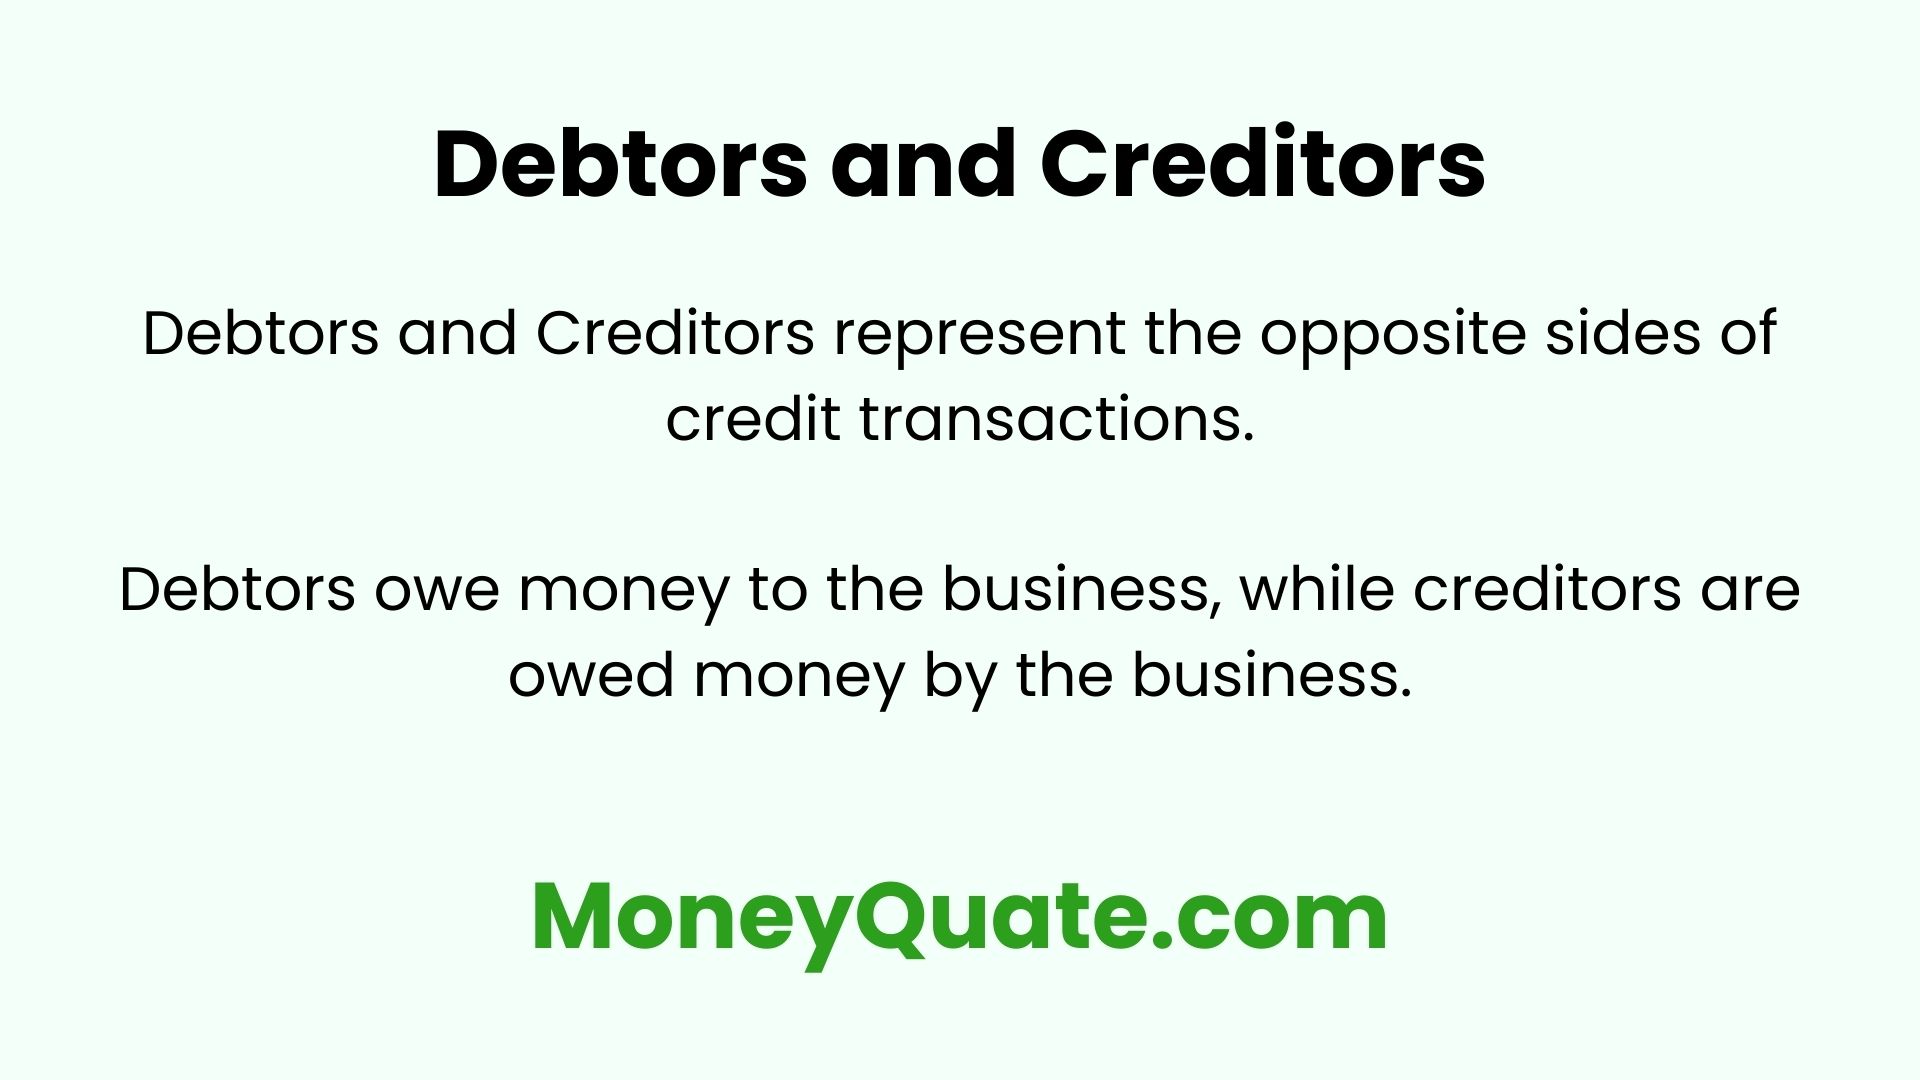 Debtors and creditors